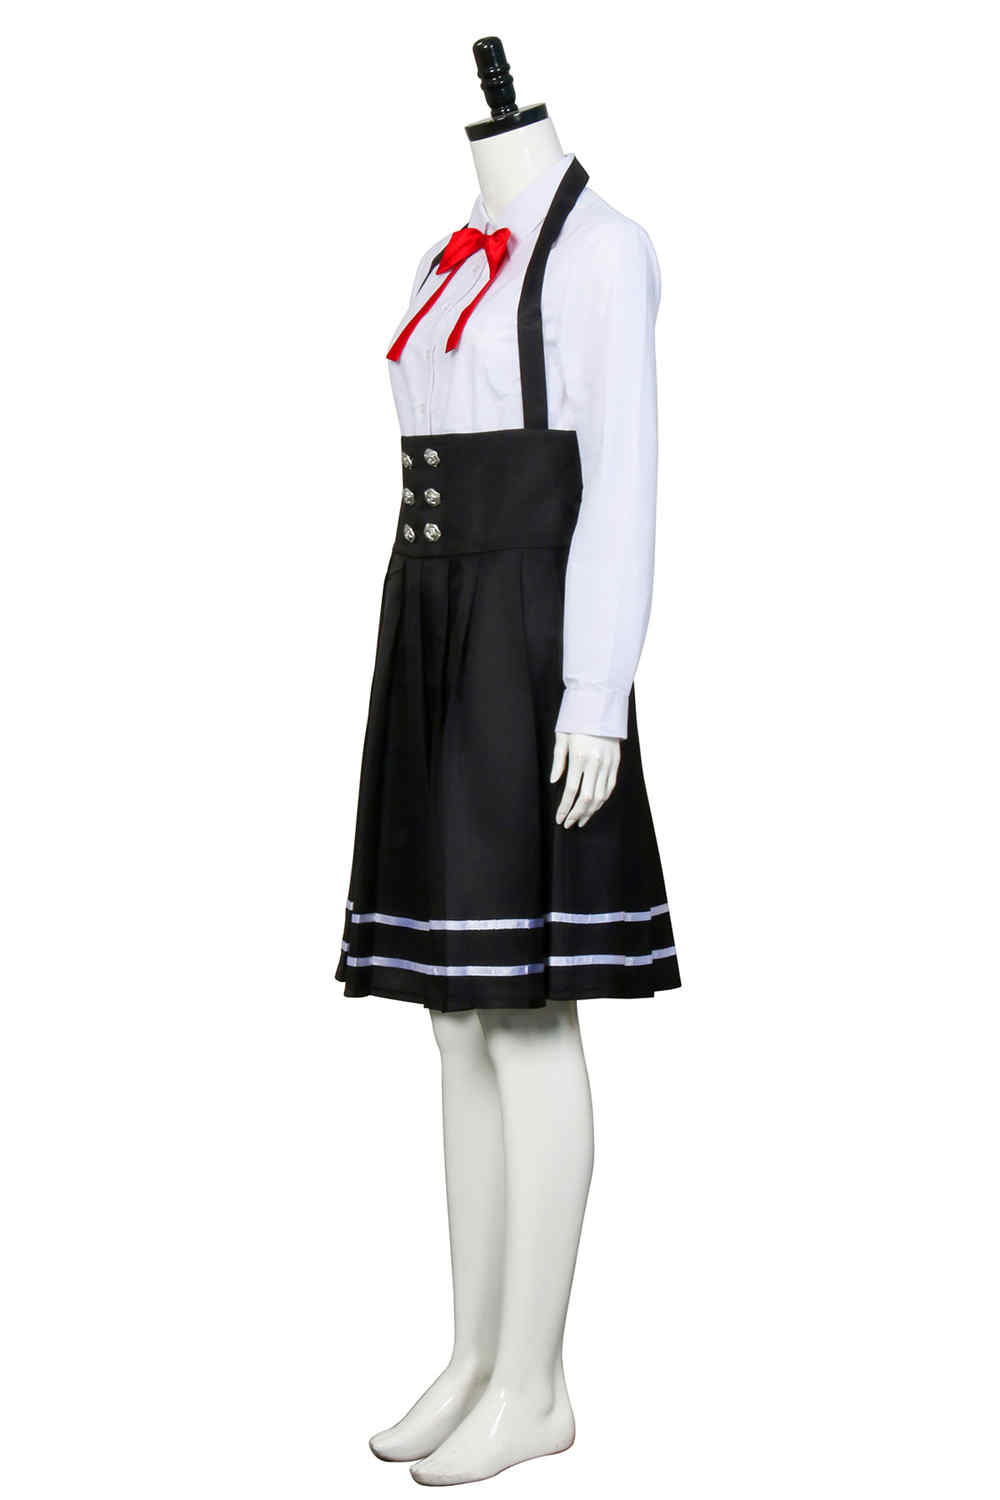 anime dangabronpa v3 shirogane tsumugi uniforme escolar faldas de uniforme de la escuela Halloween carnaval disfraz cosplay